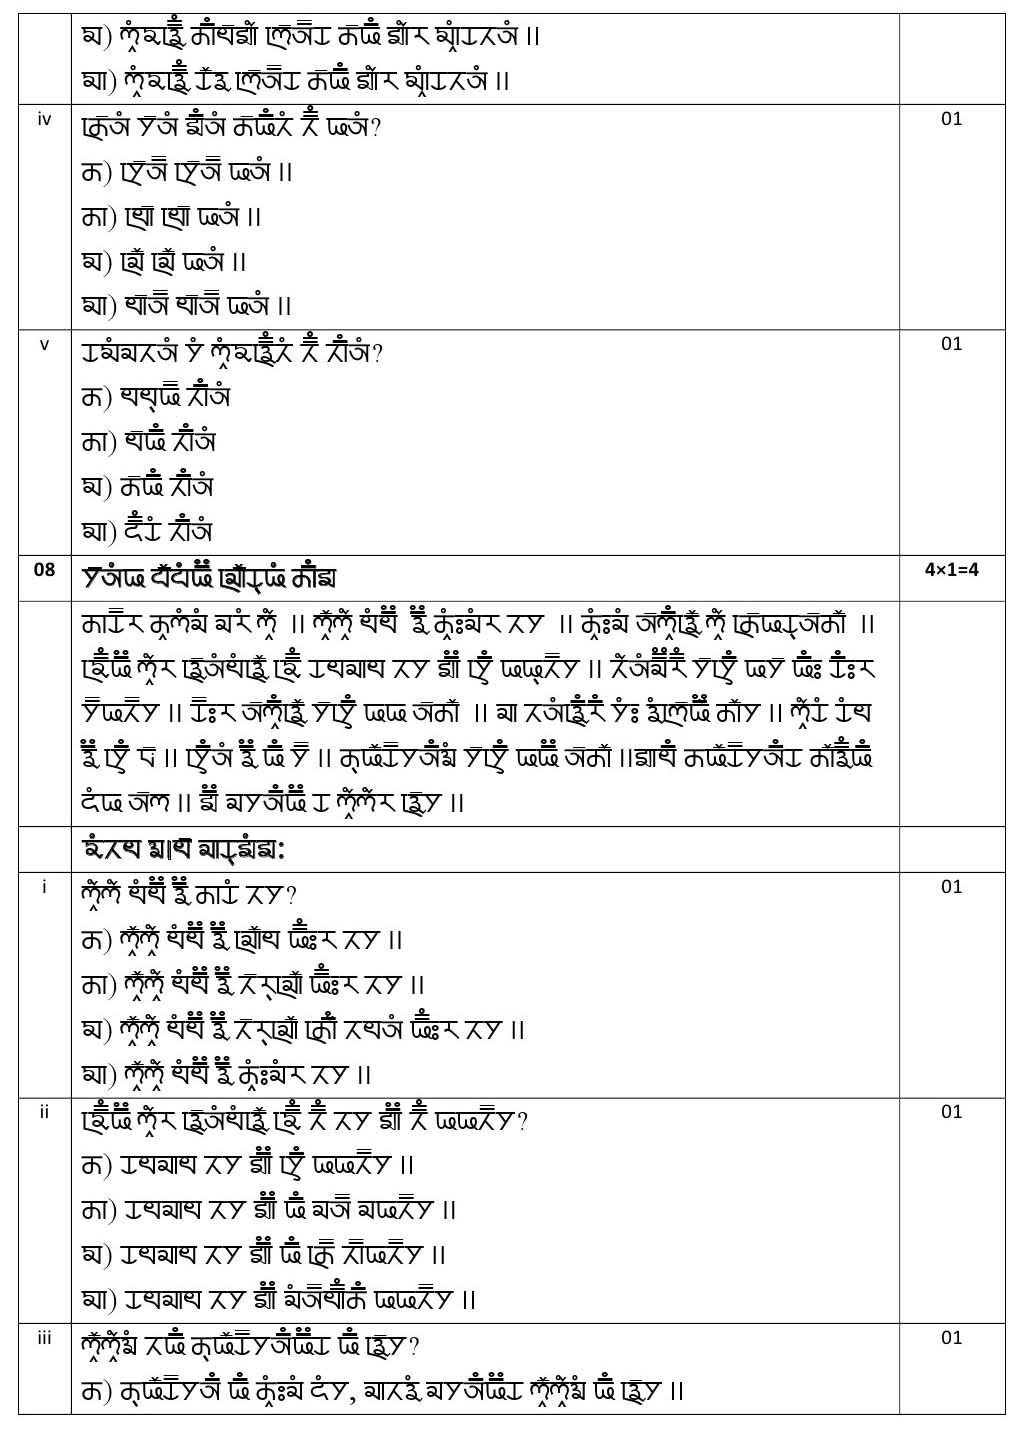 Gurung CBSE Class X Sample Question Paper 2020 21 - Image 11